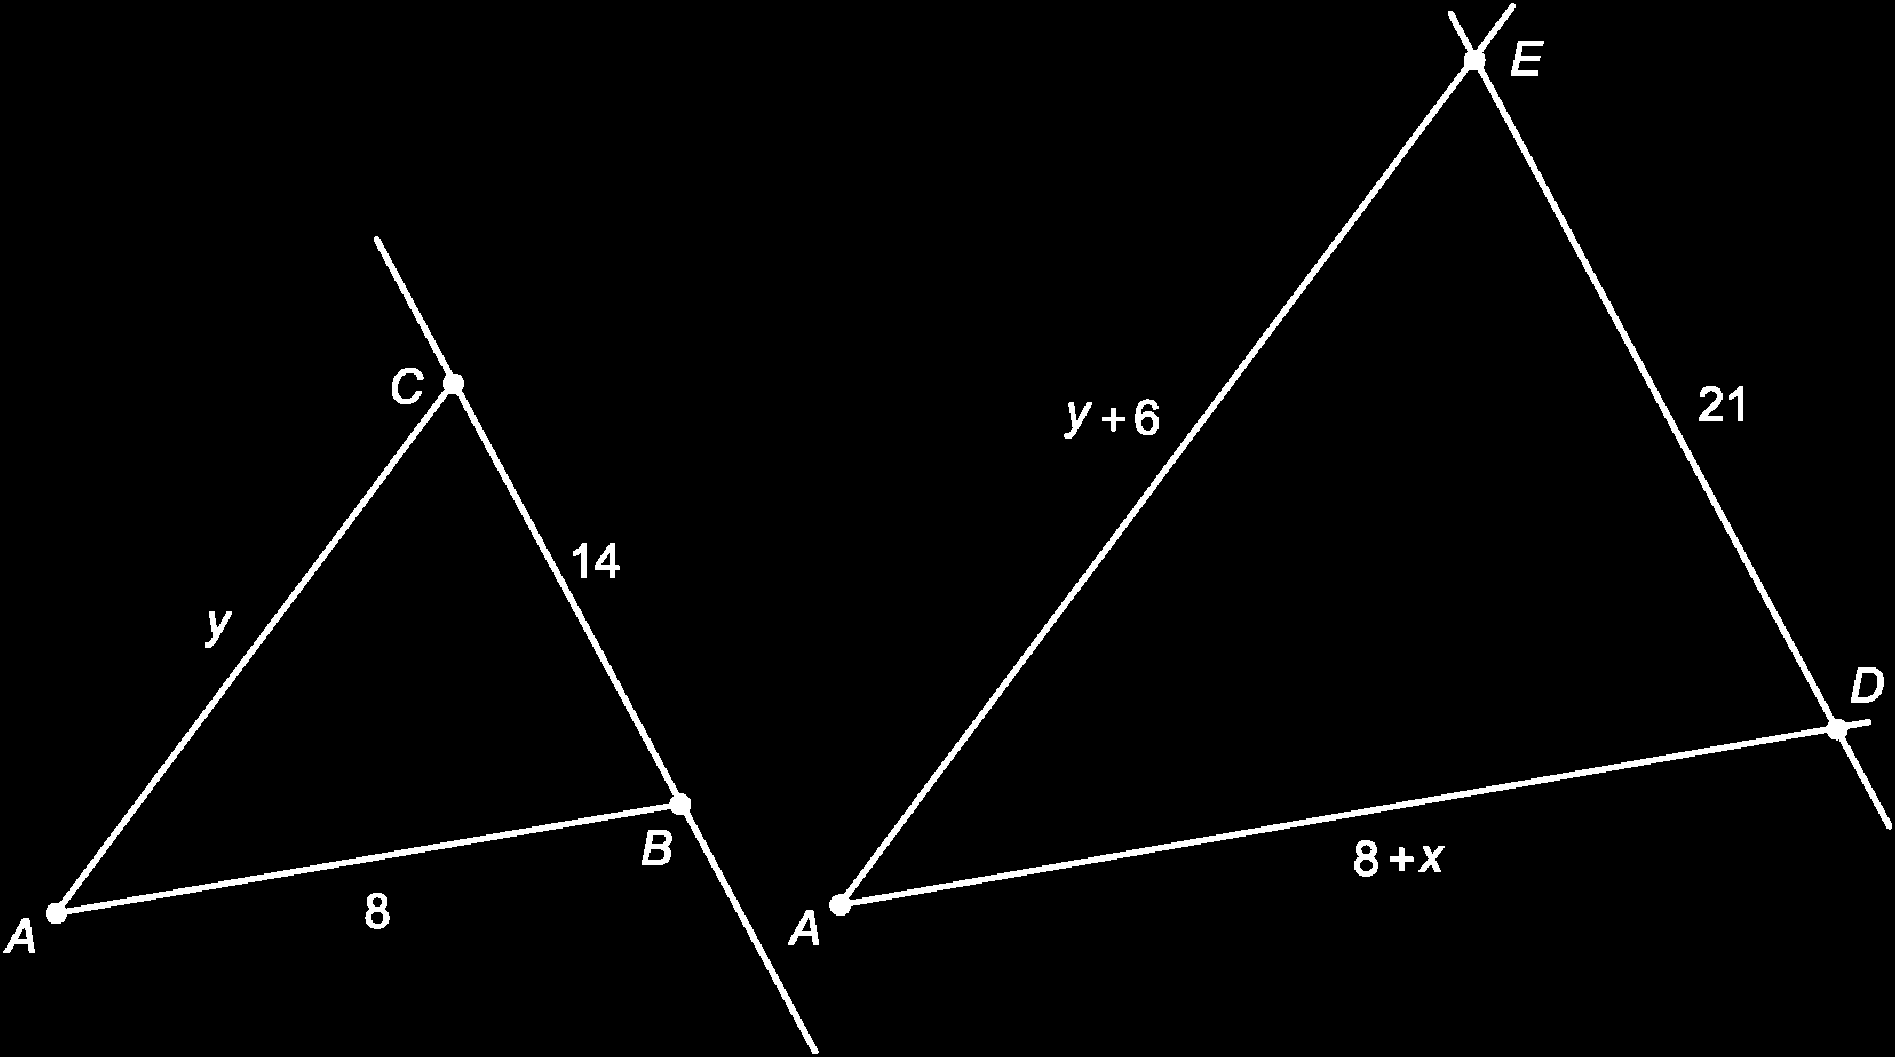 z 9 8 Driehoek RTV is gelijkvormig met riehoek RU 5 RUS met vergrotingsfator 5 RT 9, us y 59